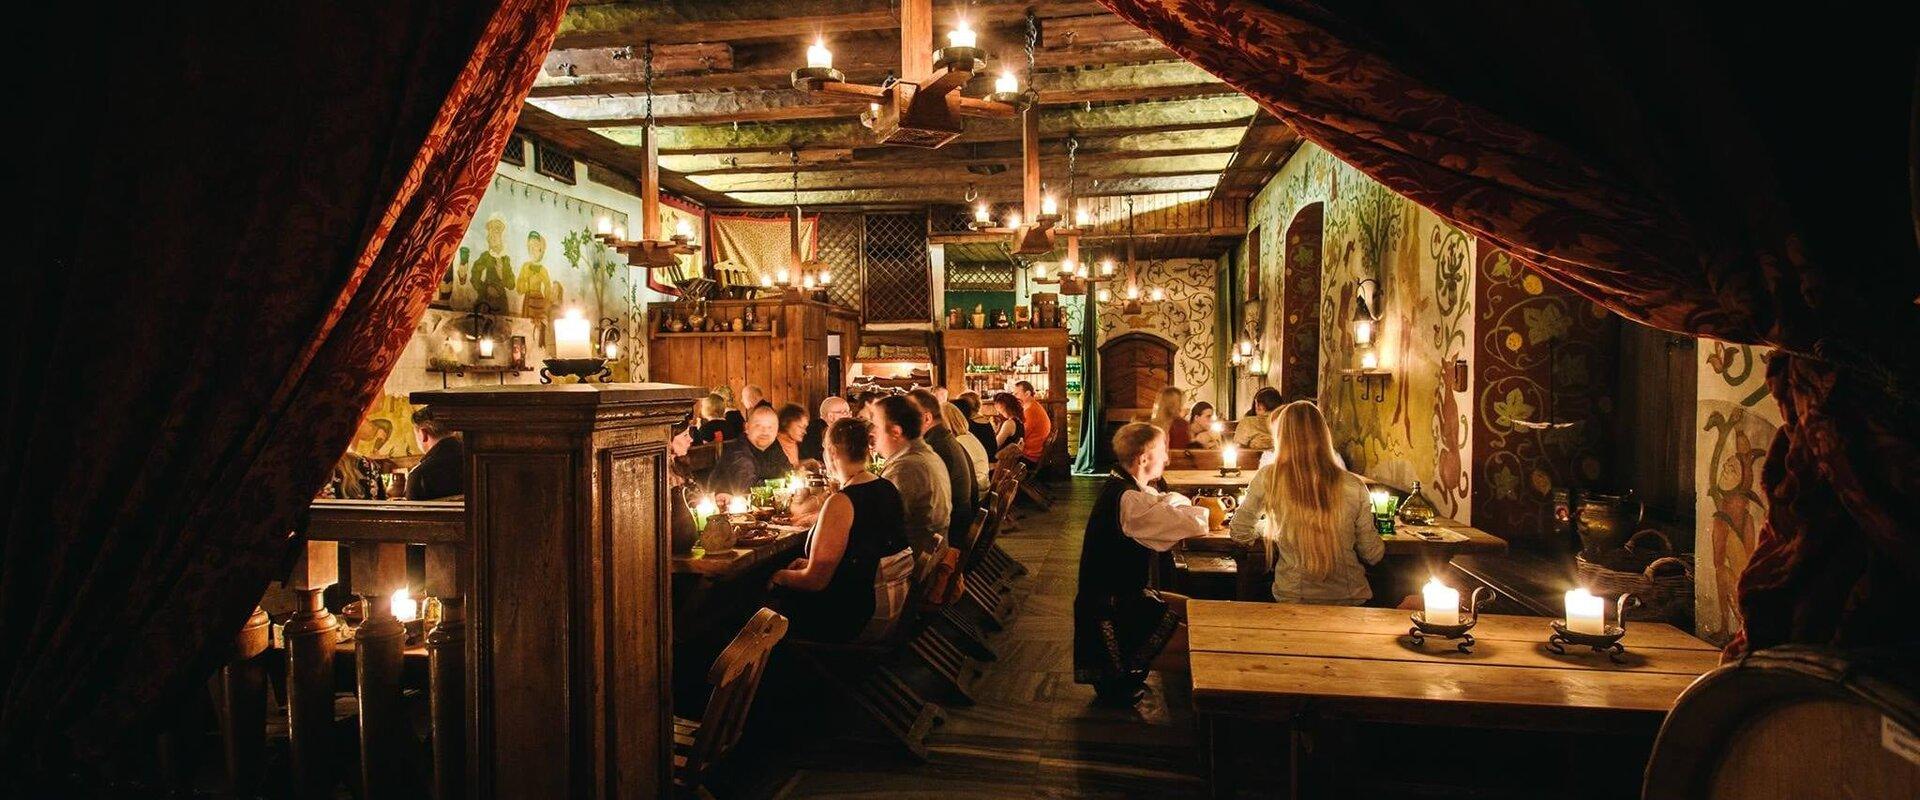 Keskiaikainen ravintola Olde Hansa on rikkaan kauppiaan koti, jossa vieraat voivat nauttia hansa-ajan kokkimestarien esikuvan mukaan valmistetuista he